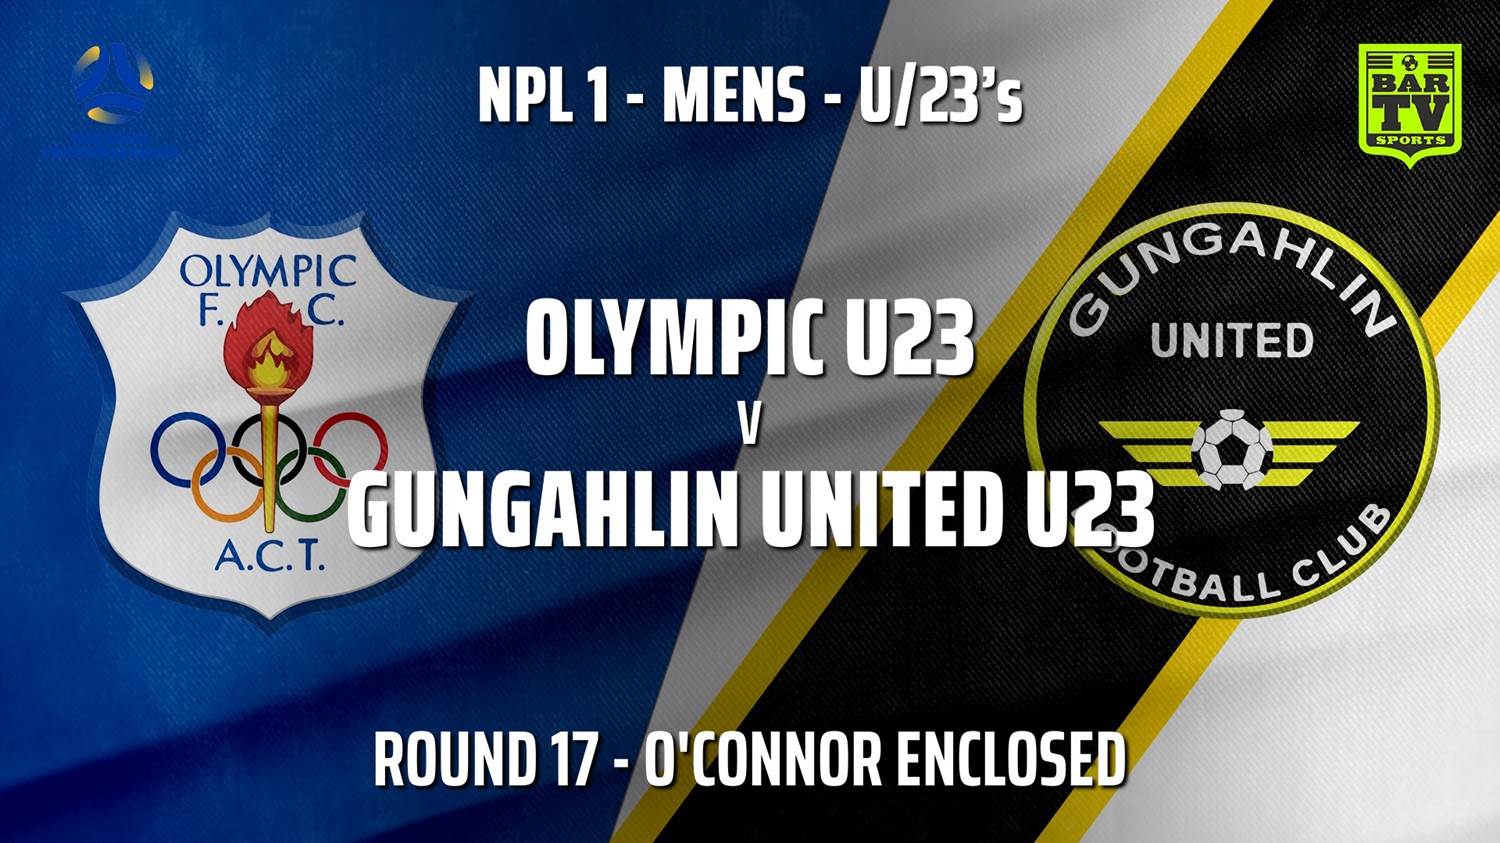 210807-Capital NPL U23 Round 17 - Canberra Olympic U23 v Gungahlin United U23 Slate Image